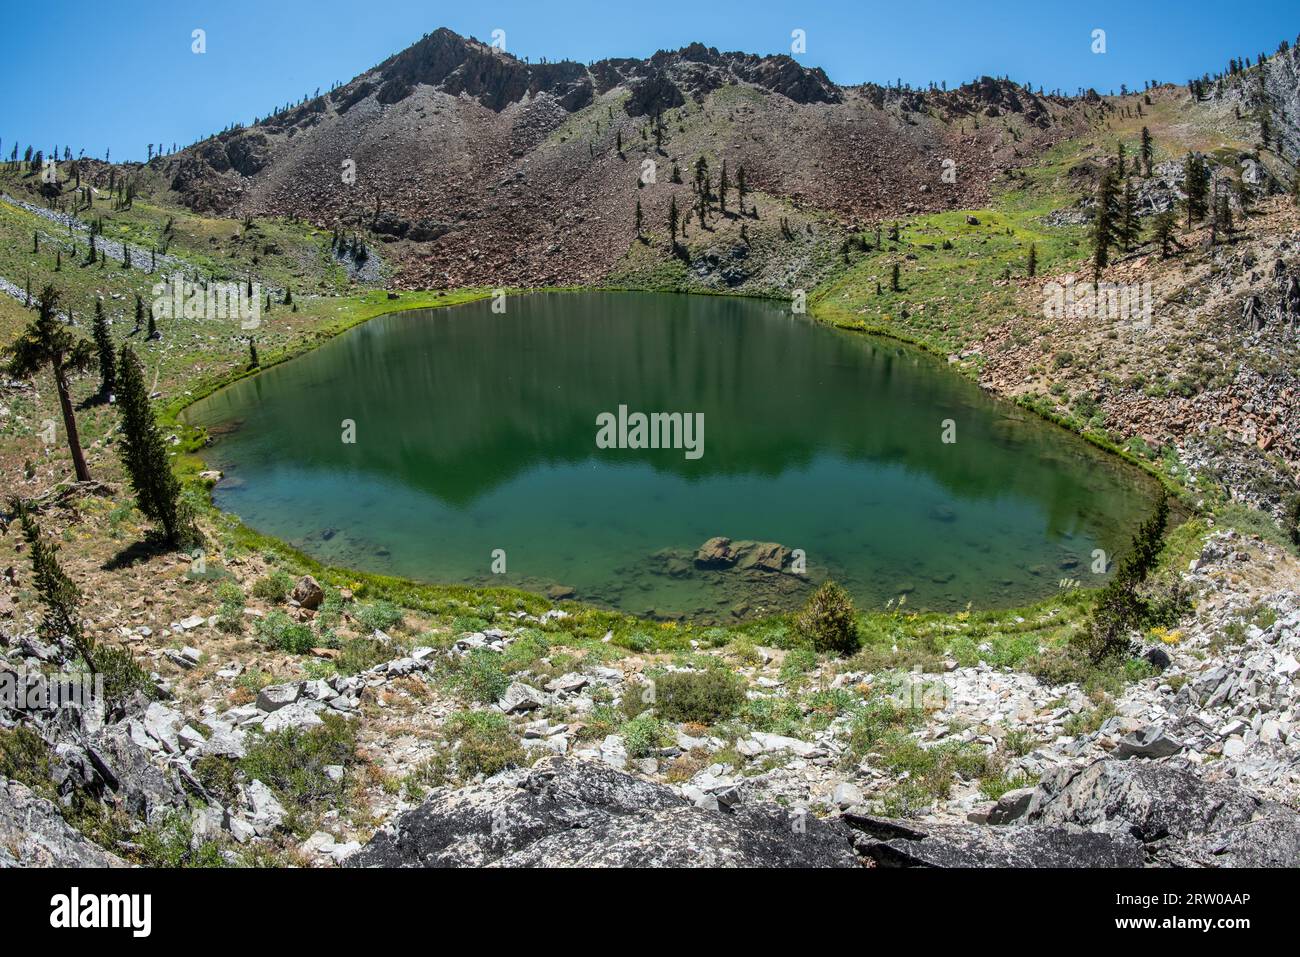 Un lac montagnard de haute altitude dans la nature sauvage Trinity alps en Californie du Nord. Banque D'Images